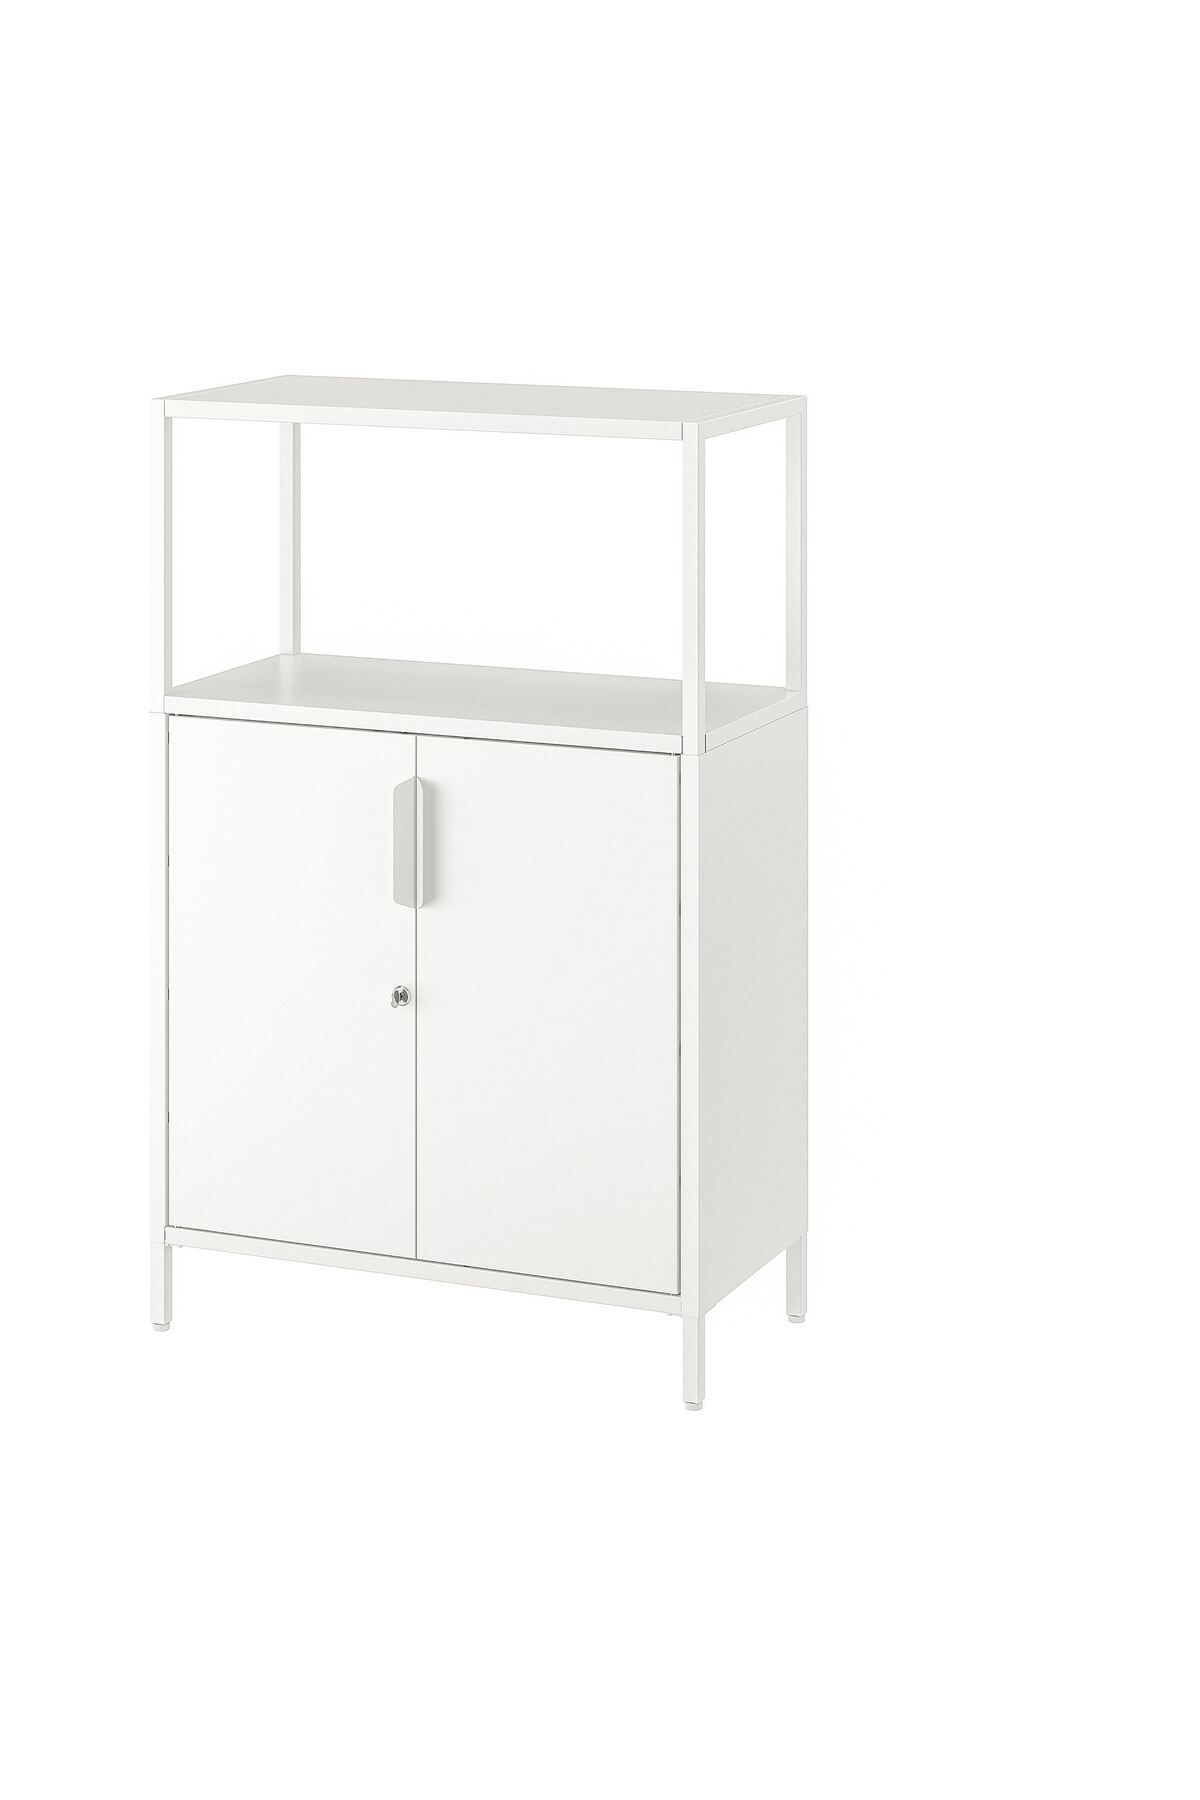 IKEA kapaklı dolap, beyaz, 70x110 cm